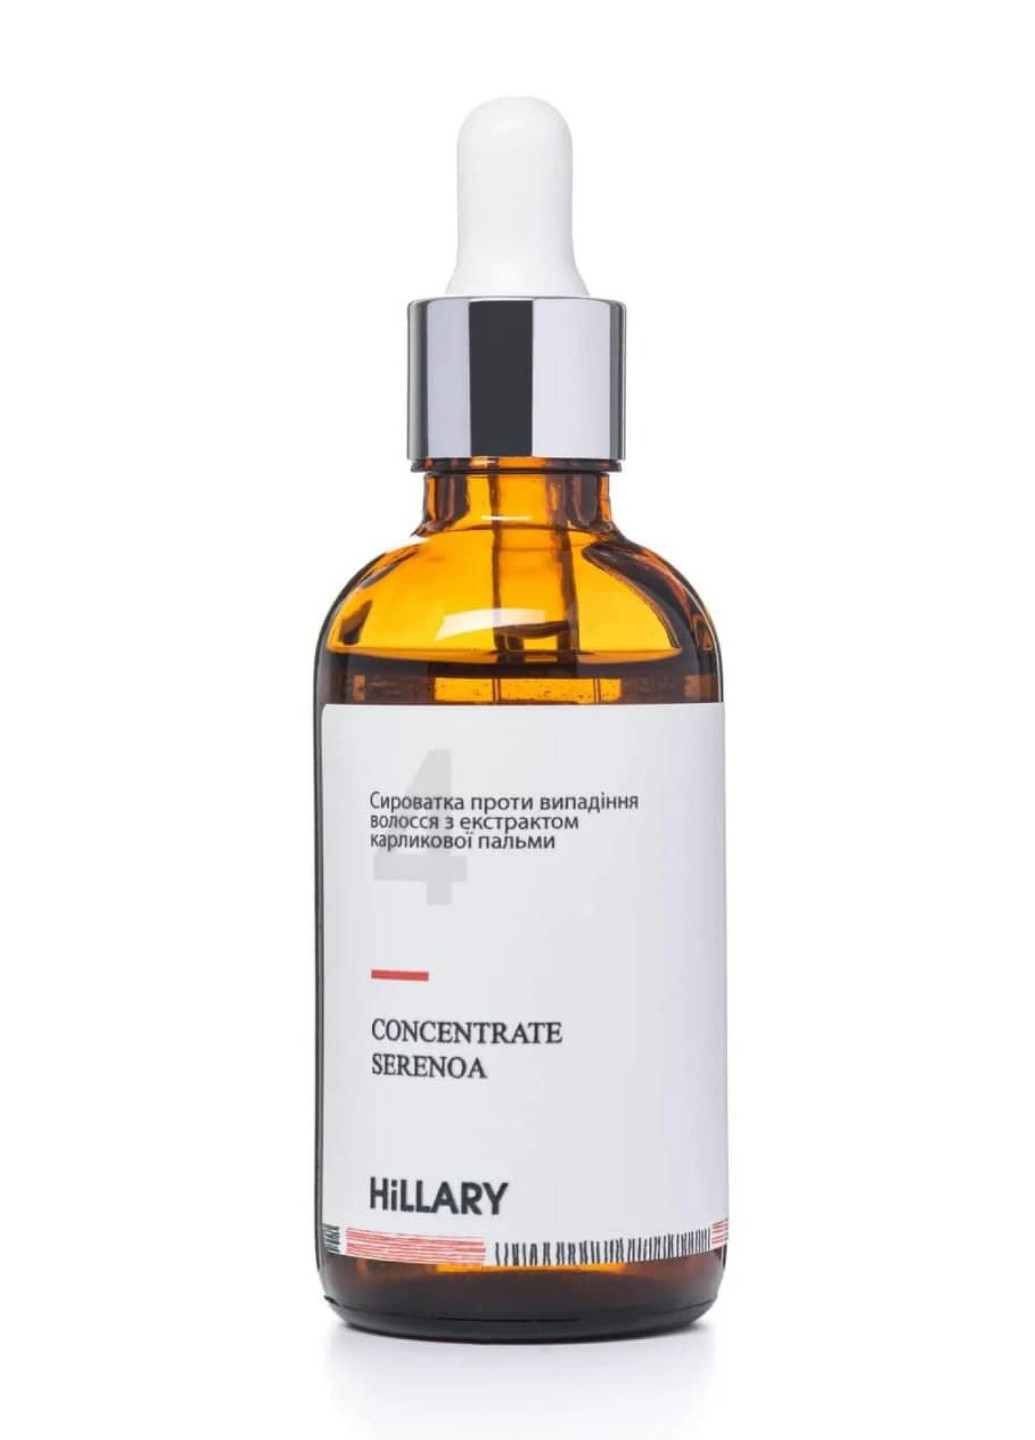 Сыворотка для волос Concentrate Serenoa + Шампунь для жирного типа волос Green Tea Phyto-essential и гребень Hillary (256520108)